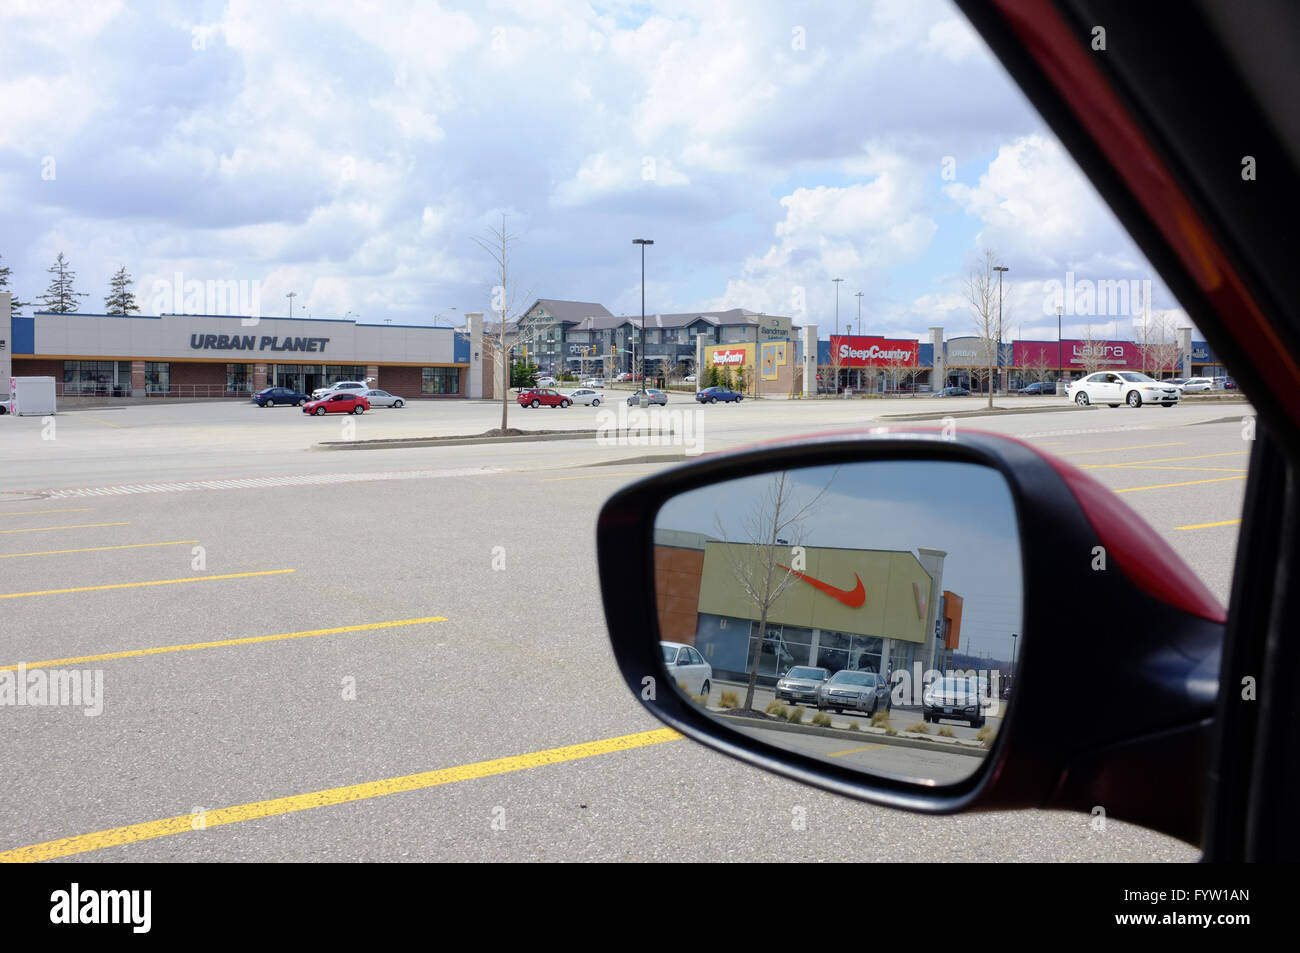 Le logo de Nike se reflète dans le miroir de l'aile d'une voiture garée dans un grand centre commercial parking. Banque D'Images